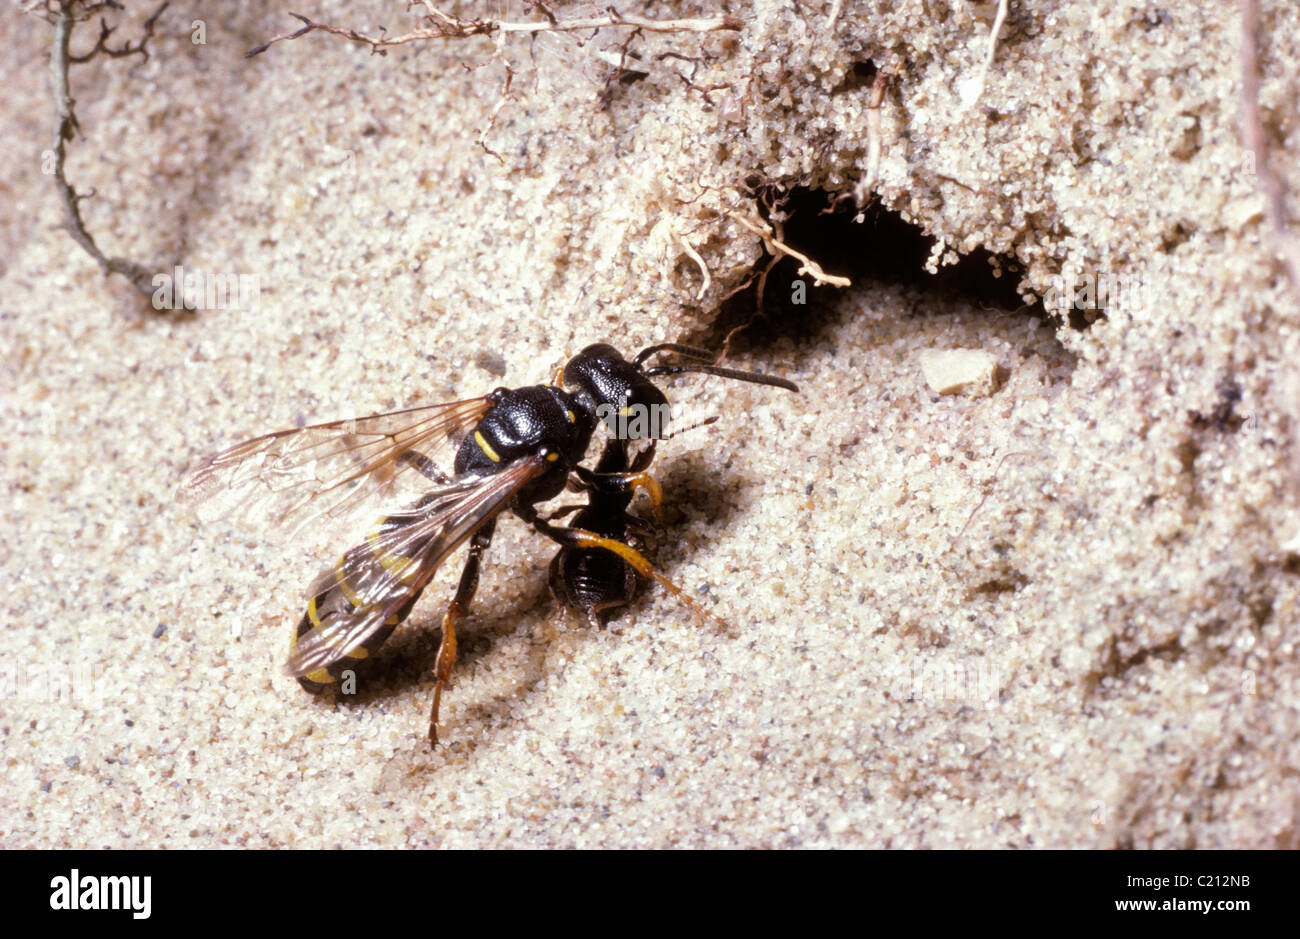 Cerf de sable-digger wasp Cerceris arenaria (femelle) en prenant un charançon paralysé dans son terrier dans une dune de sable, au Royaume-Uni. Banque D'Images